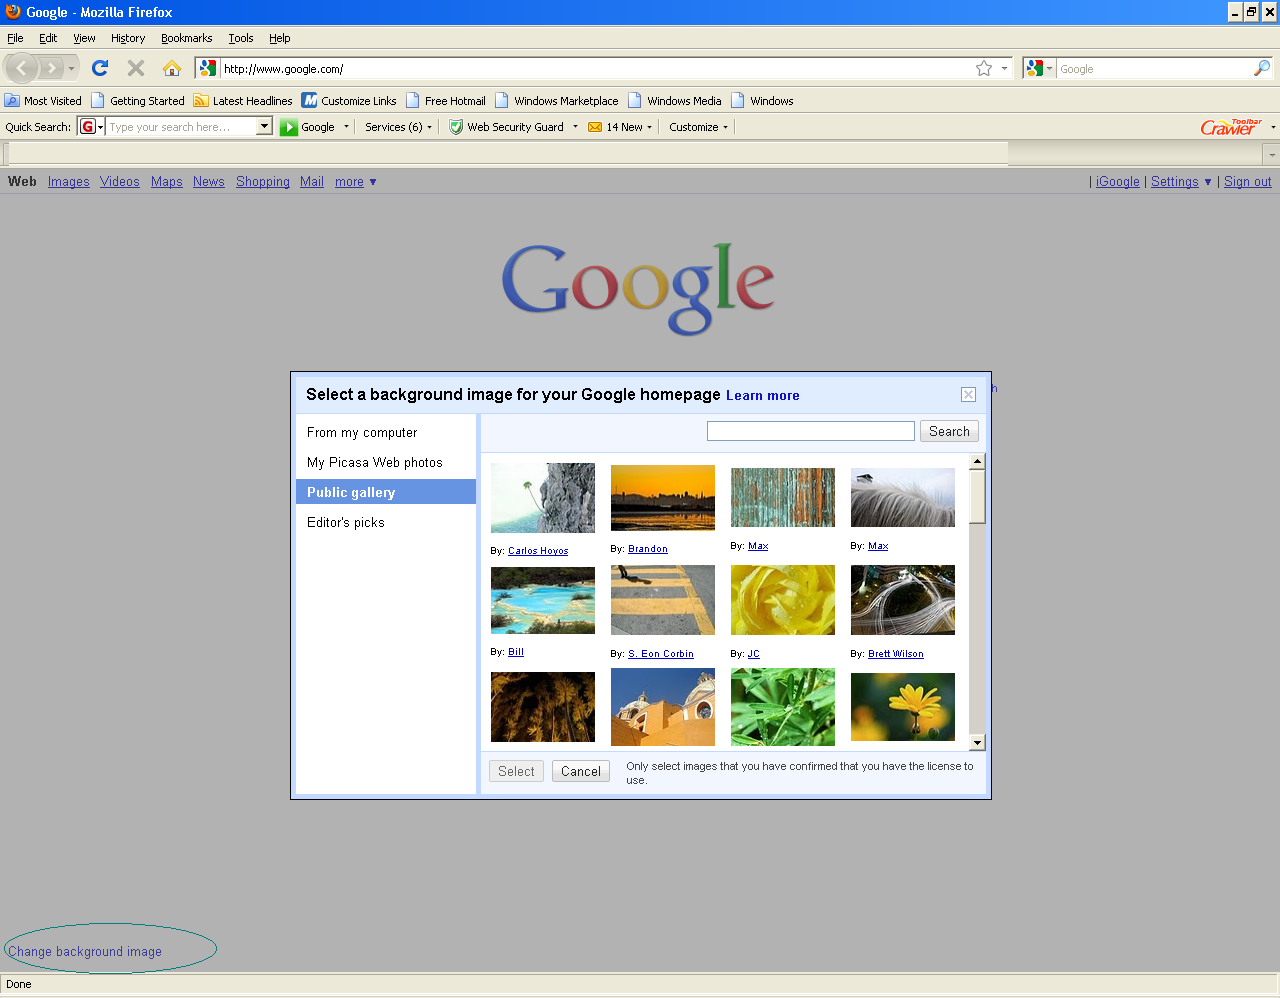 Bing Wallpaper For Google Home